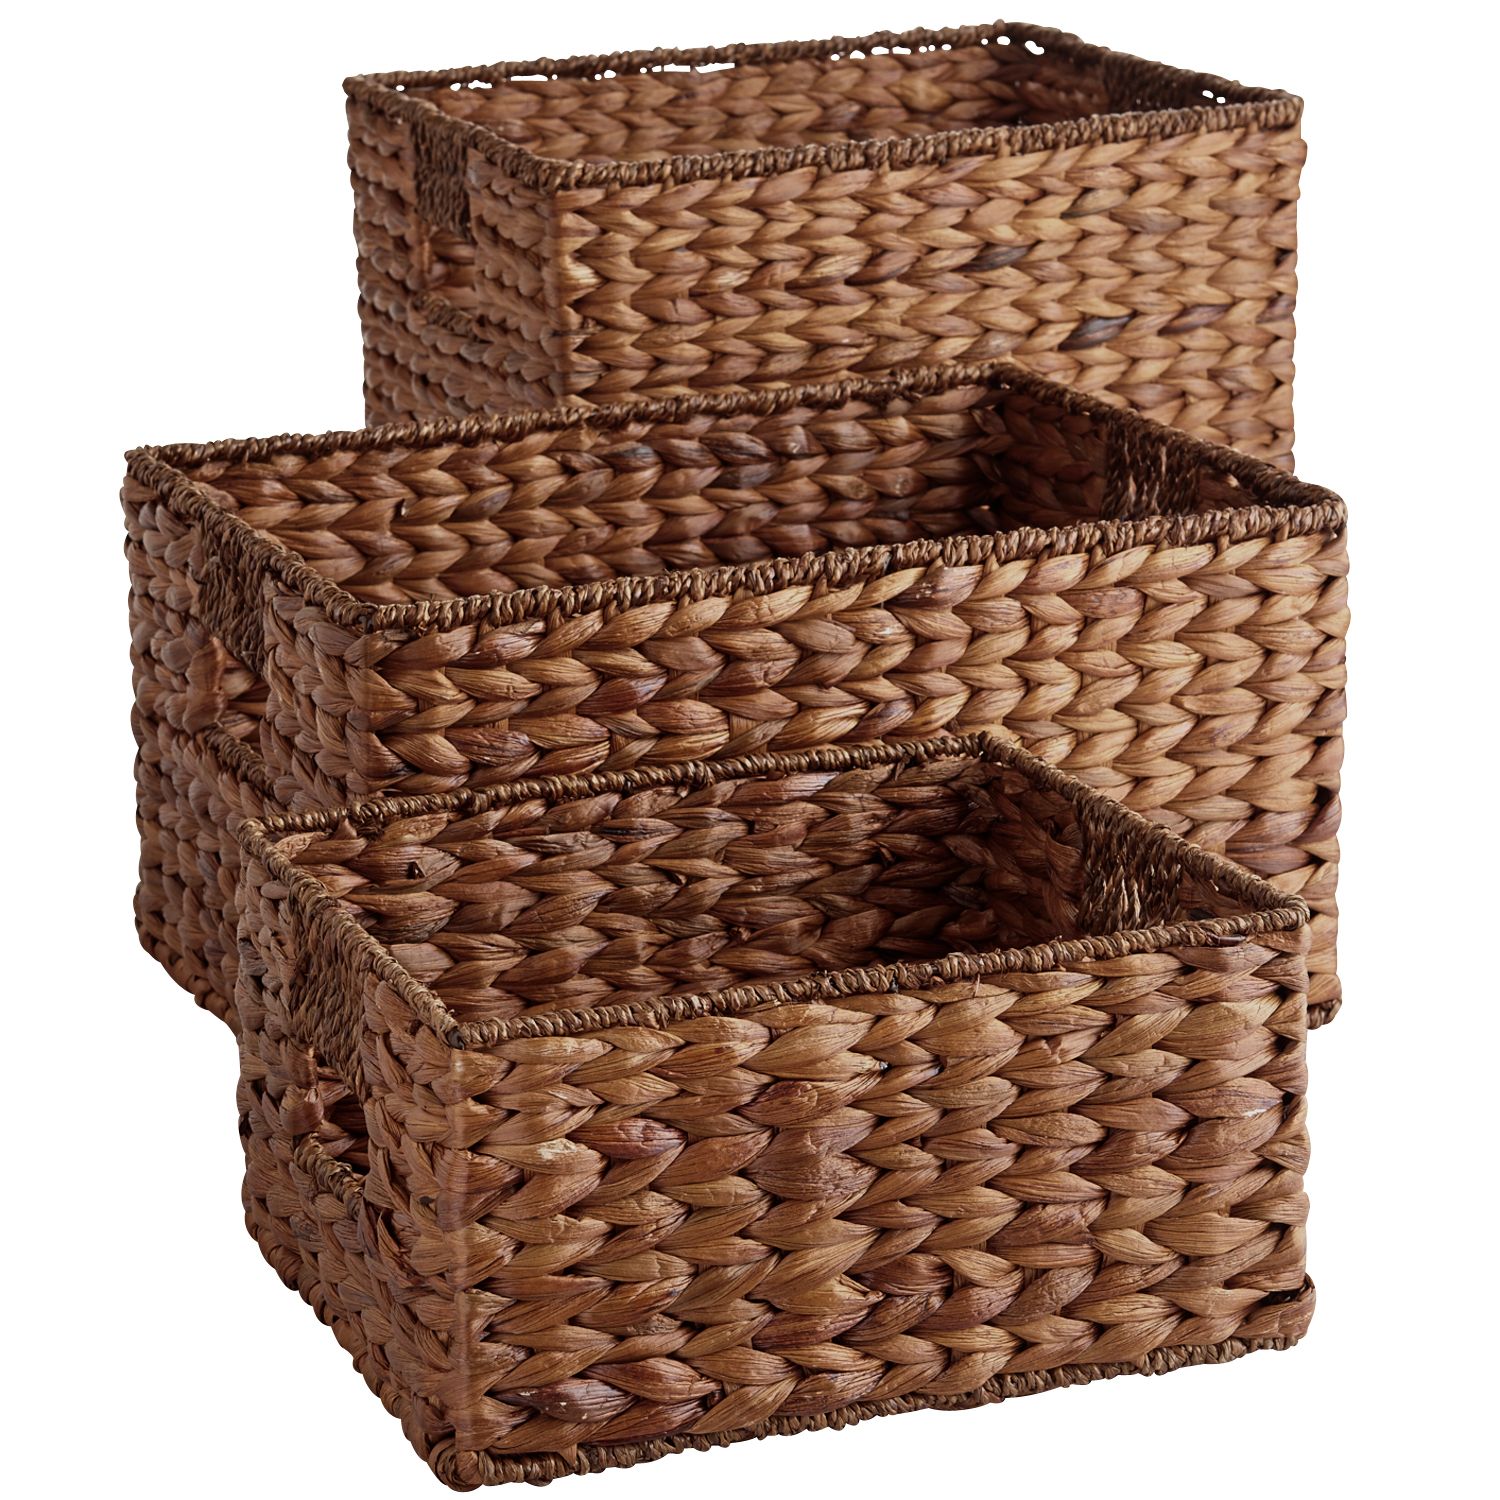 Wicker Baskets Carson Espresso Wicker Shelf Storage Baskets VHIWNOG